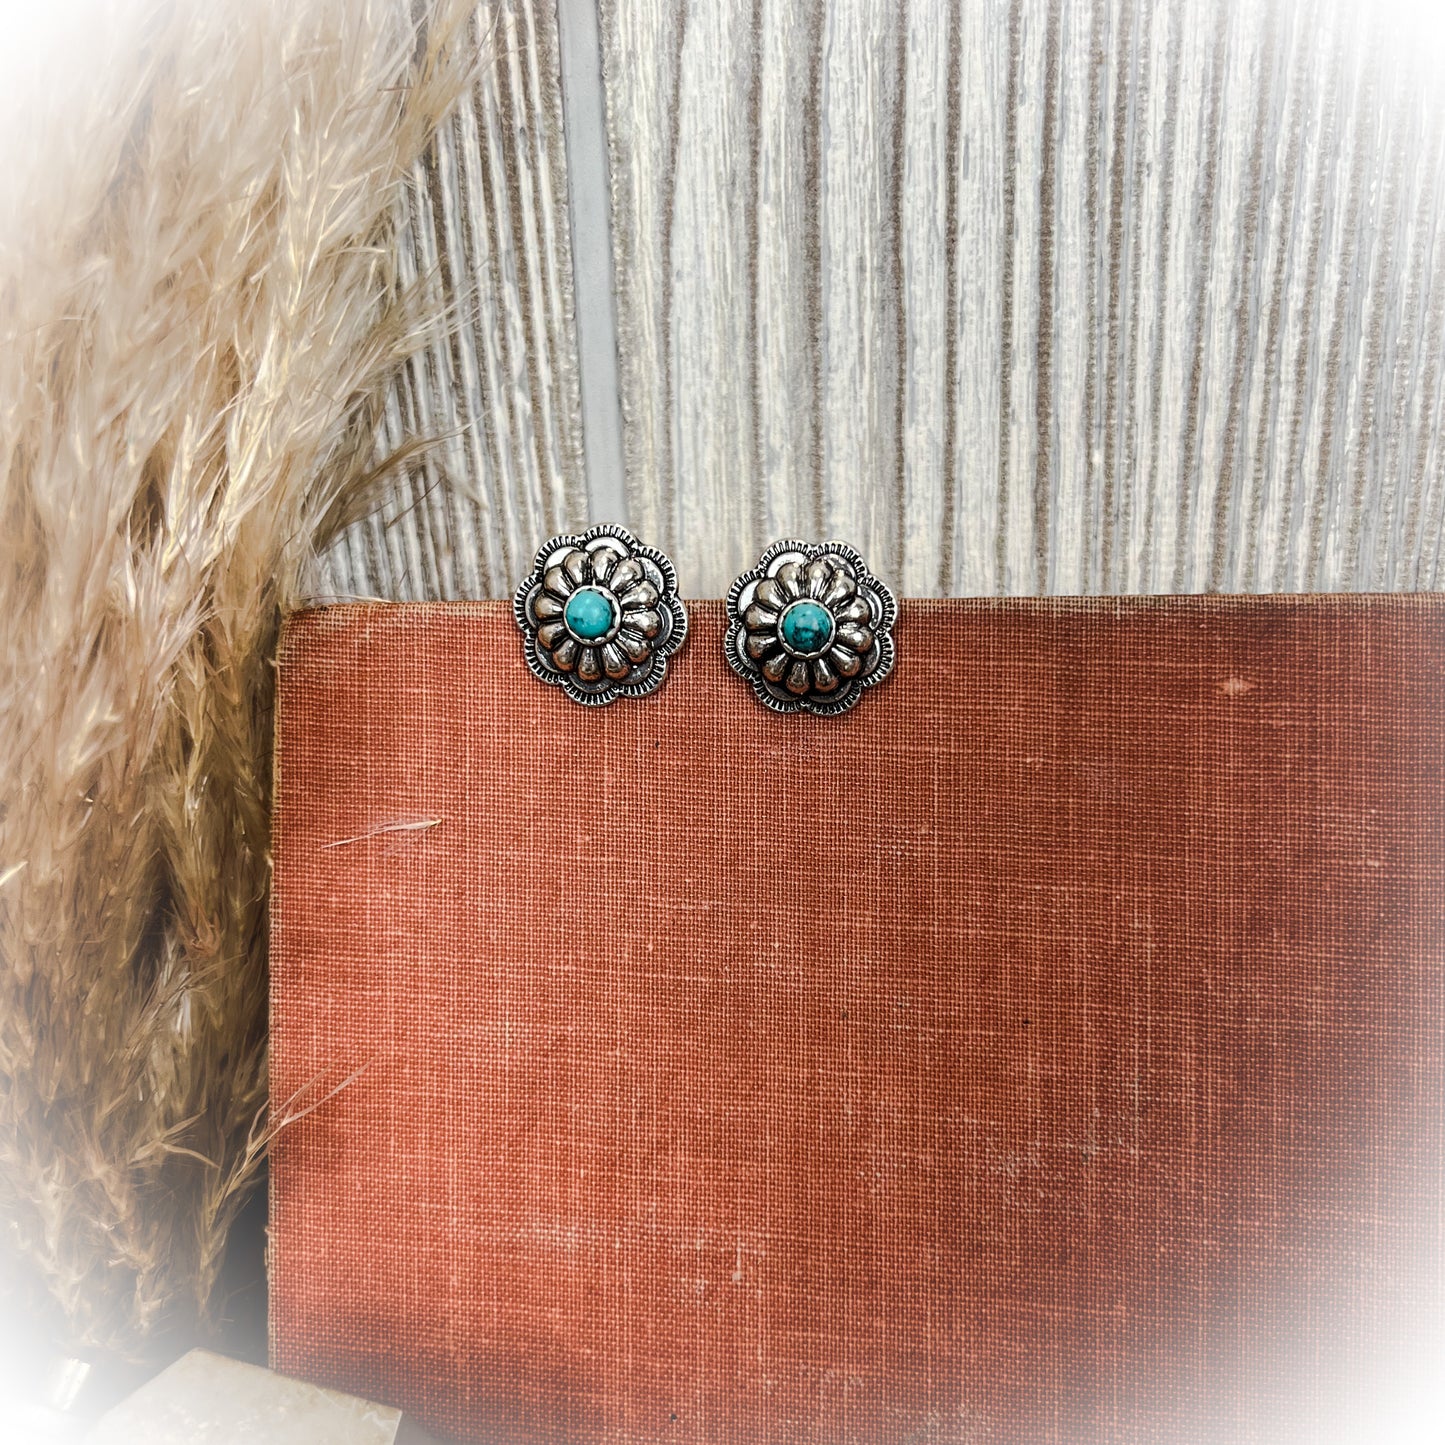 z-Flower Concho Stud Earrings - Turquoise